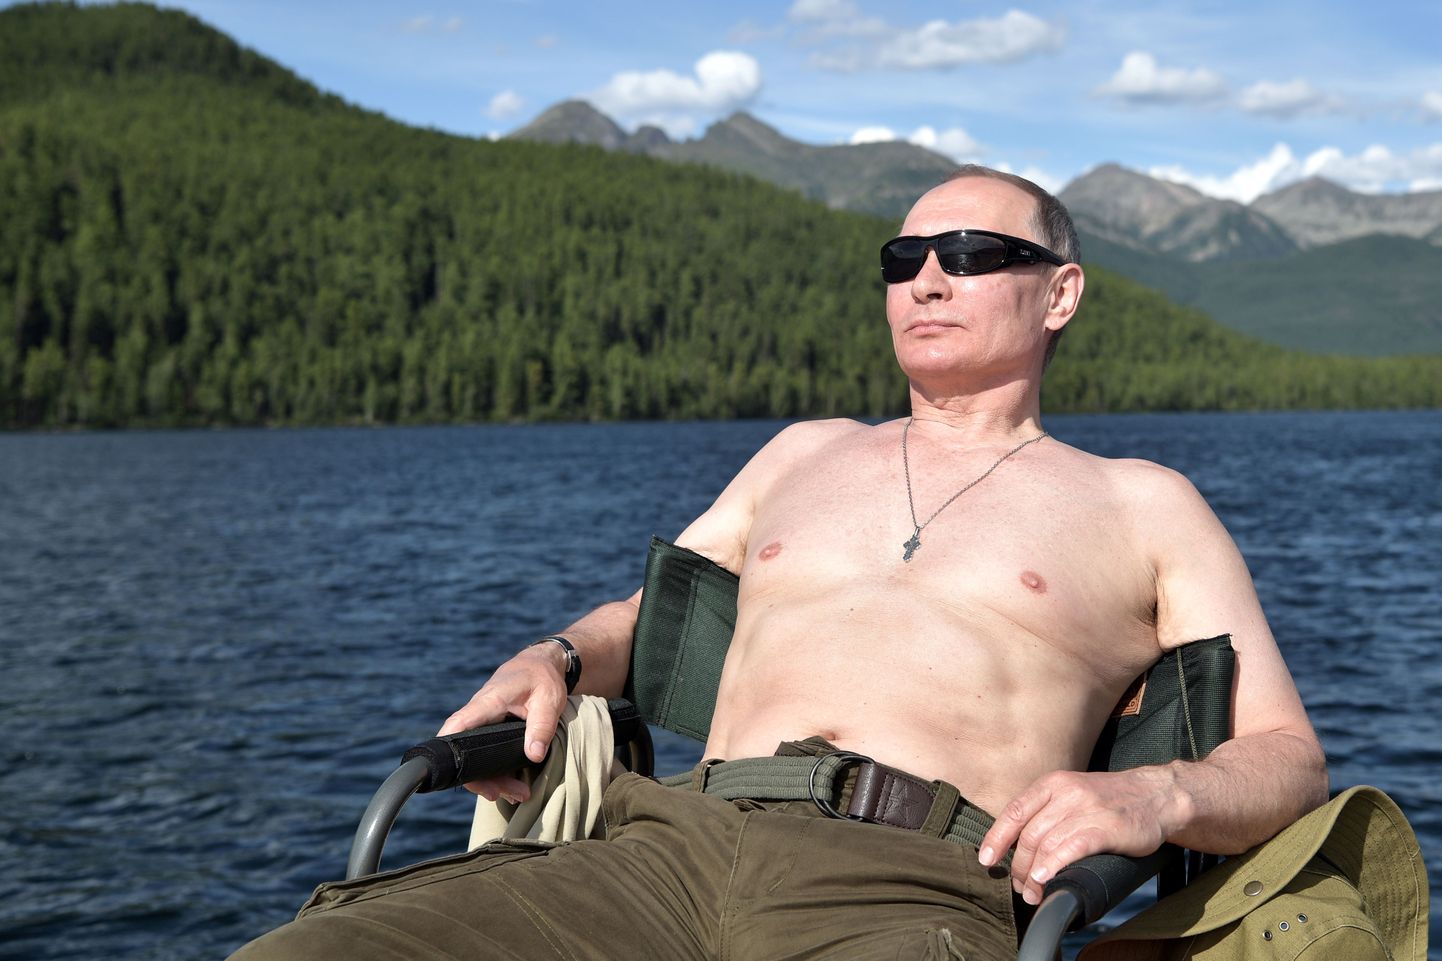 Venemaa president Vladimir Putin puhkamas augustis 2017 Siberis Tõvas